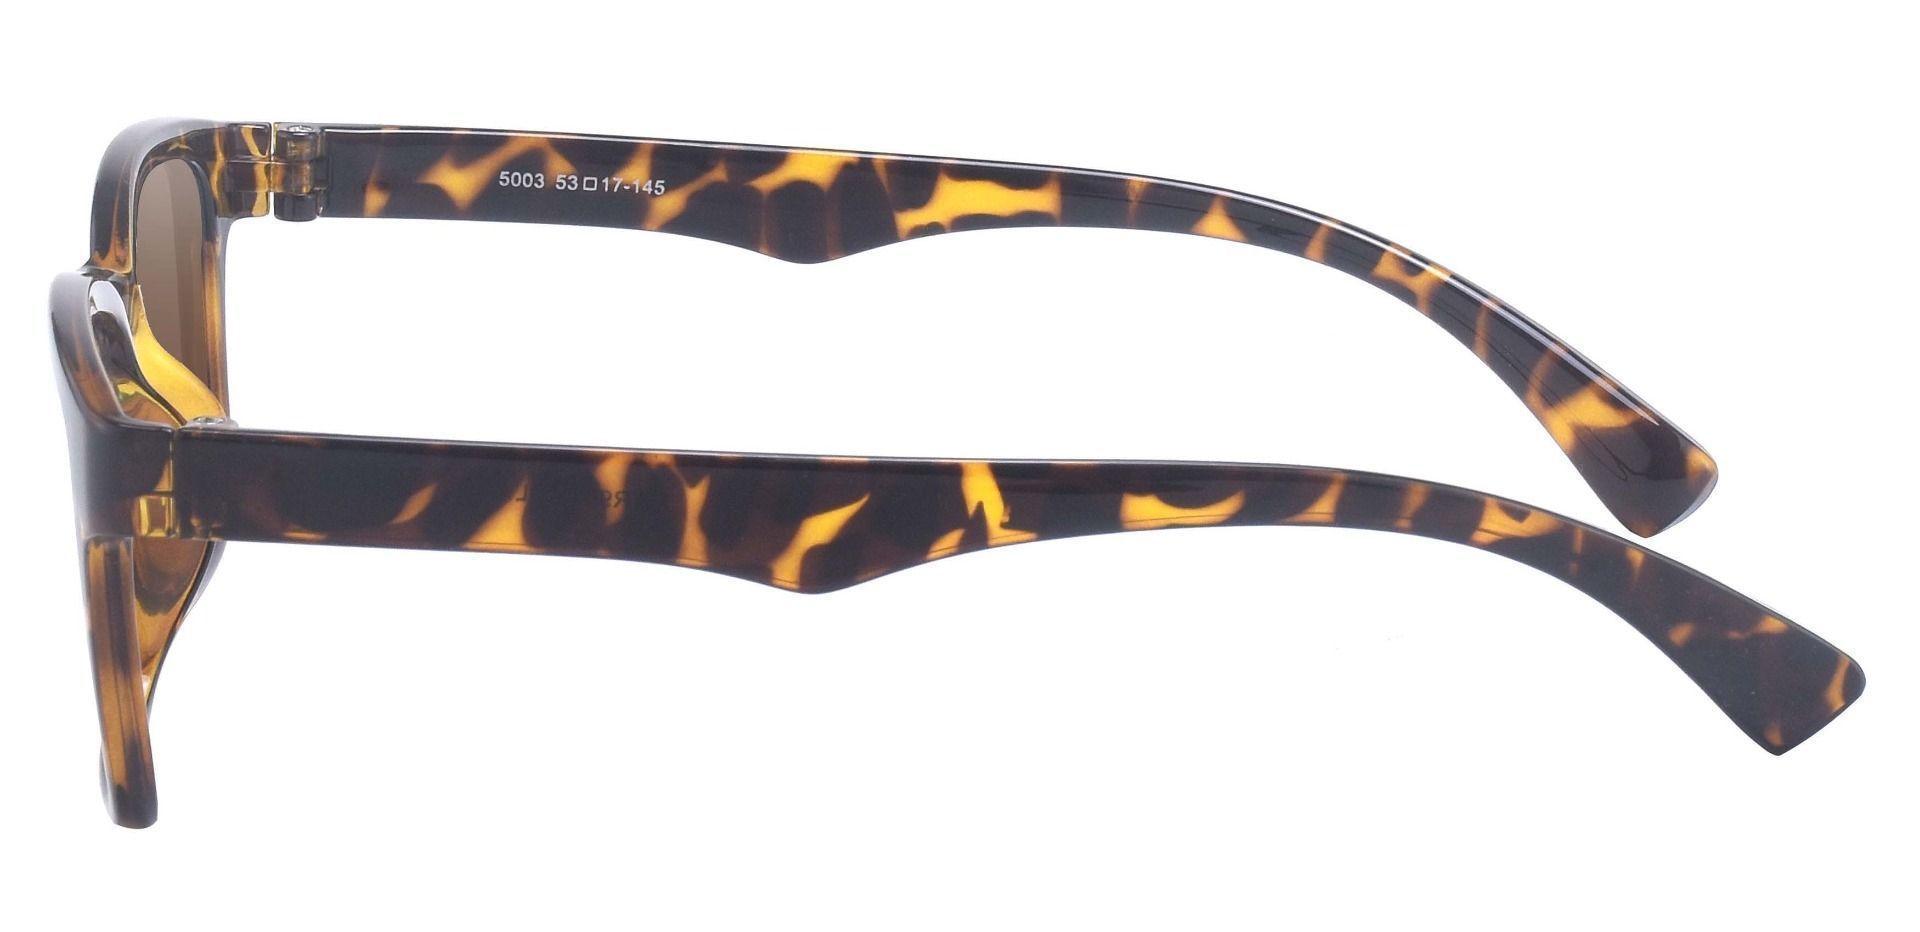 Hoover Rectangle Prescription Sunglasses - Tortoise Frame With Brown Lenses